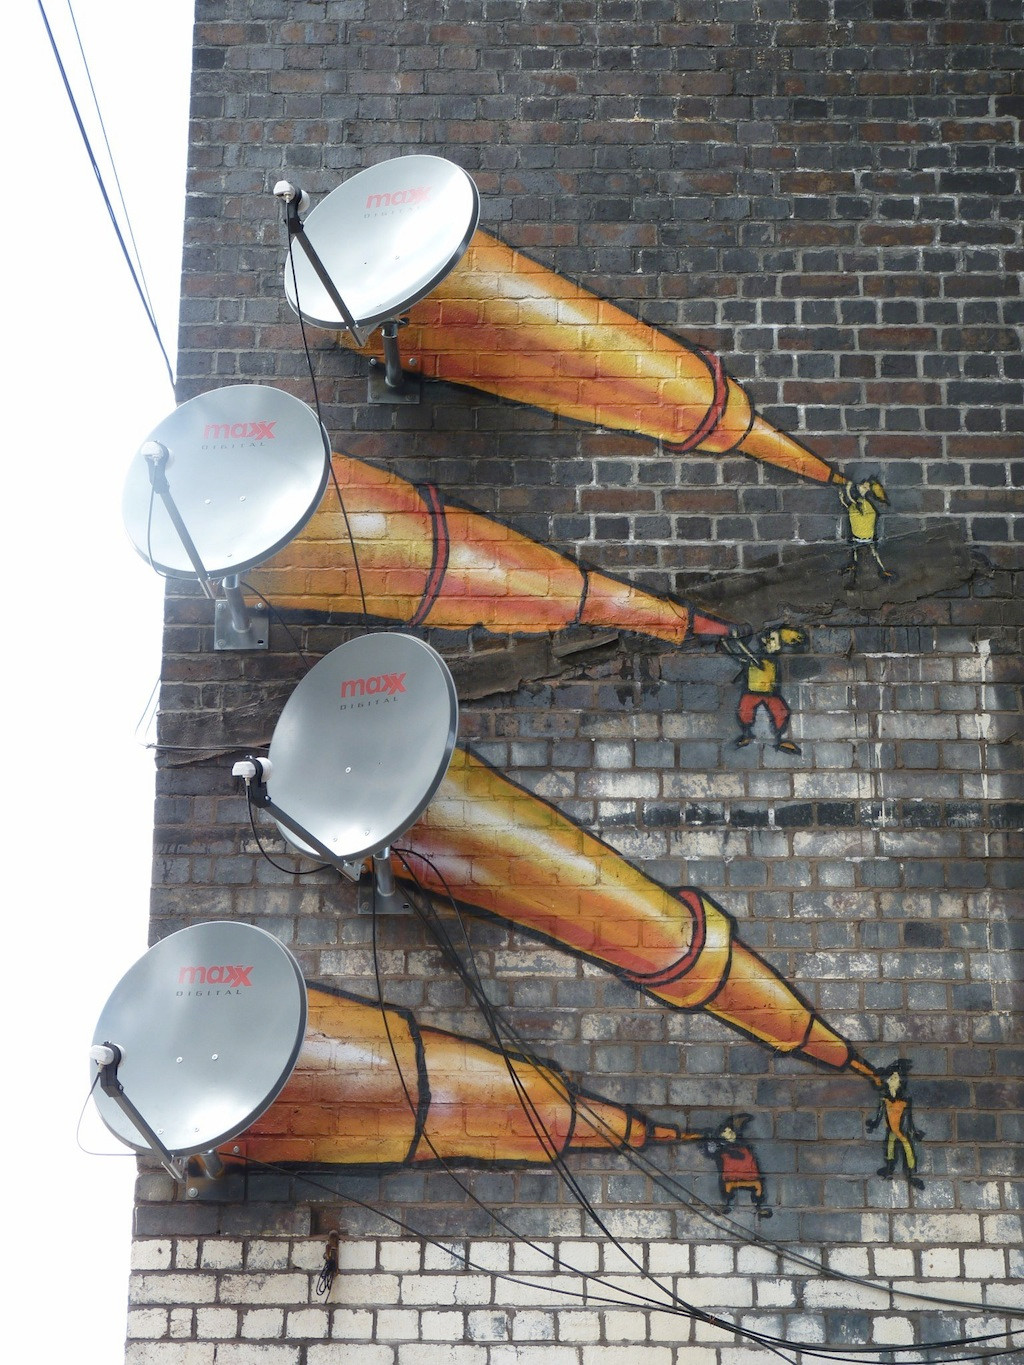 Những chiếc chảo thu tín hiệu vệ tinh biến thành những chiếc kính viễn vọng ở Birmingham, Anh